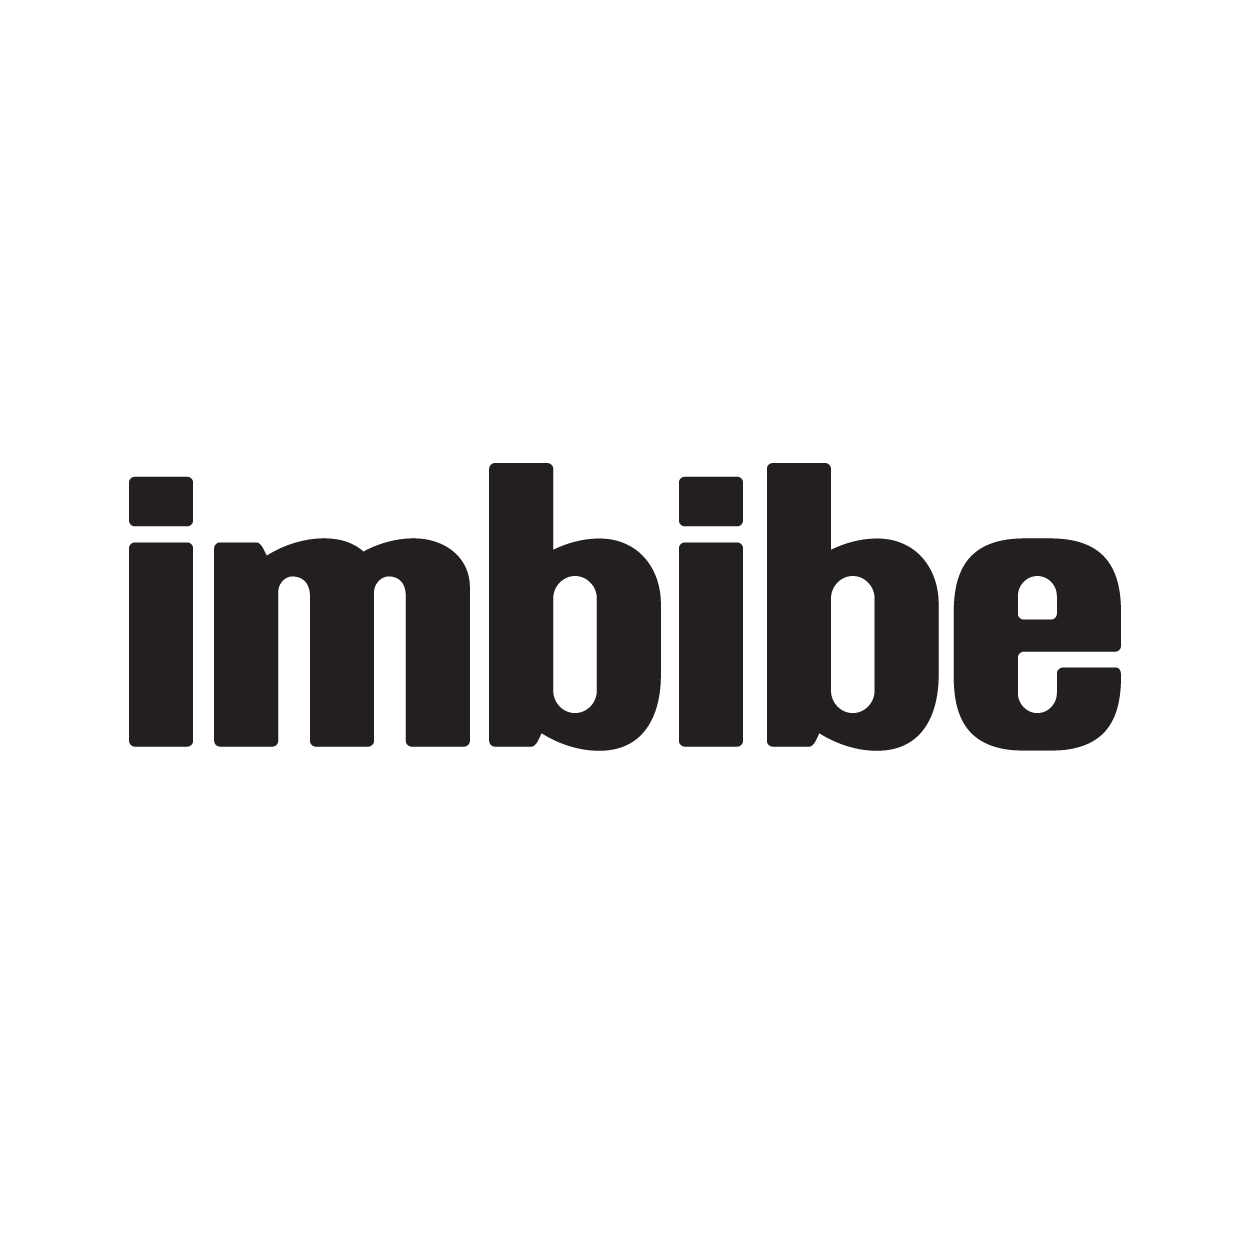 Imbibe